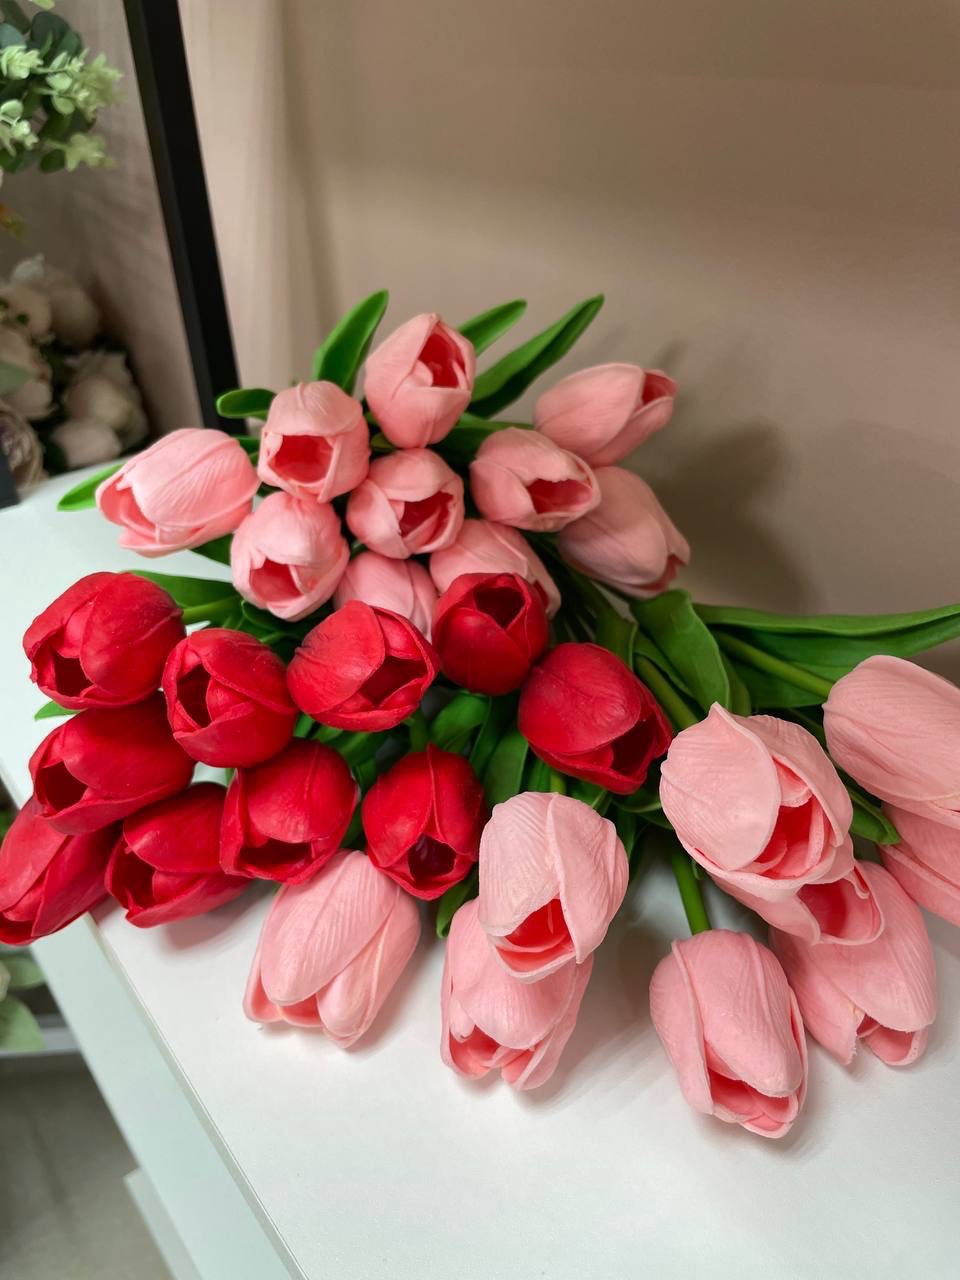 Тюльпаны - 50 ₽, заказать онлайн.